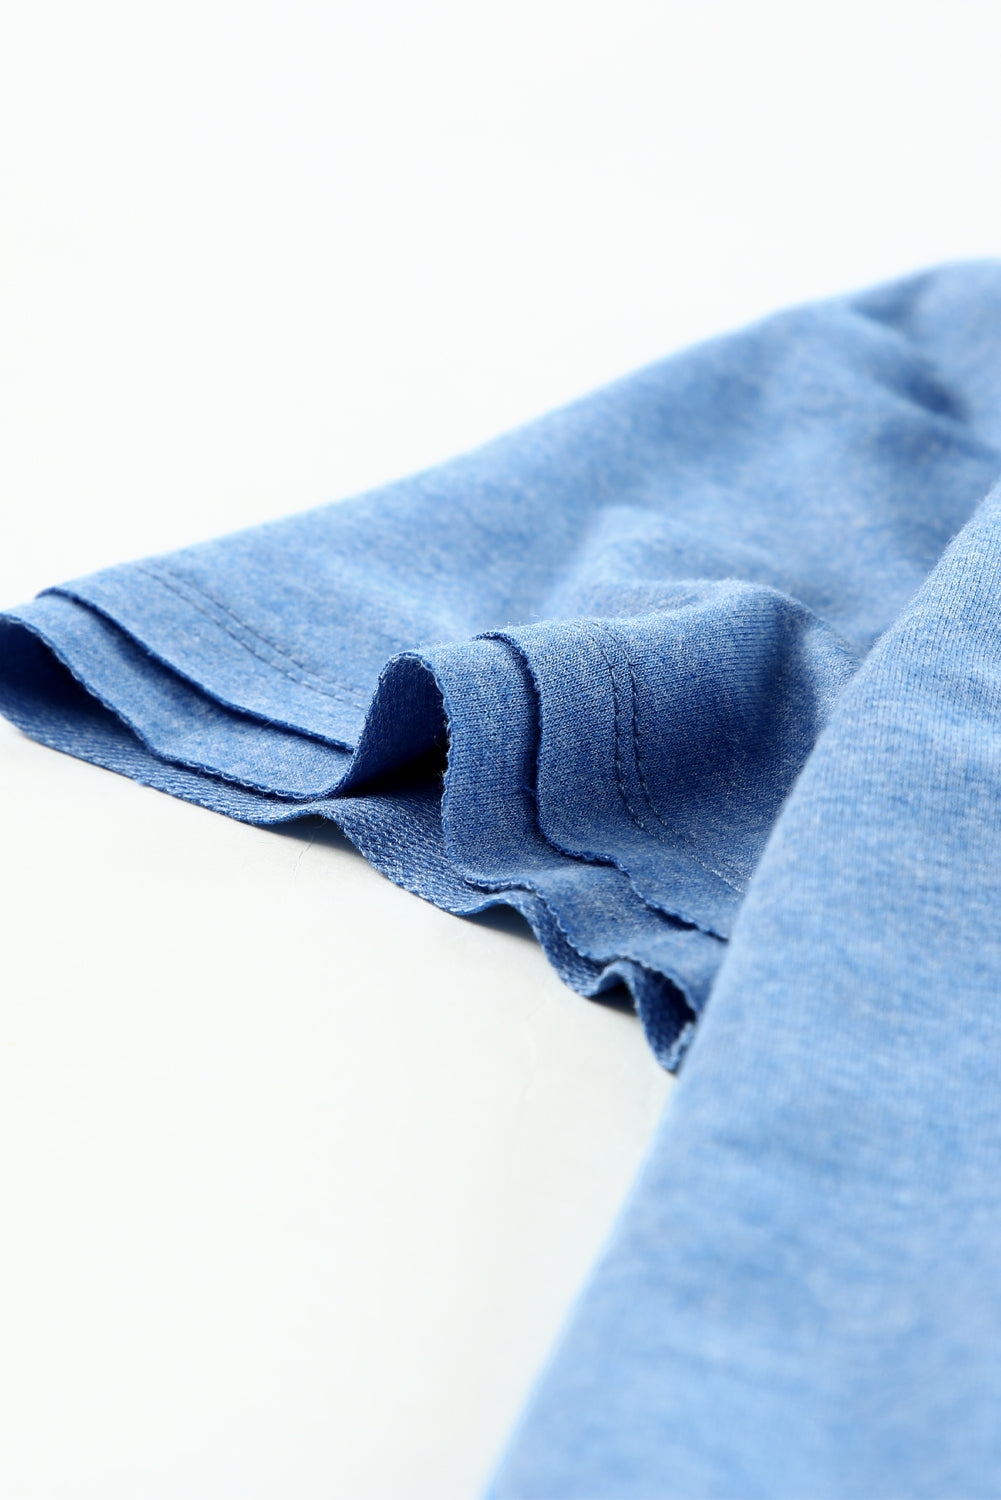 Himmelblaues, mineralgewaschenes Kurzarm-T-Shirt mit V-Ausschnitt